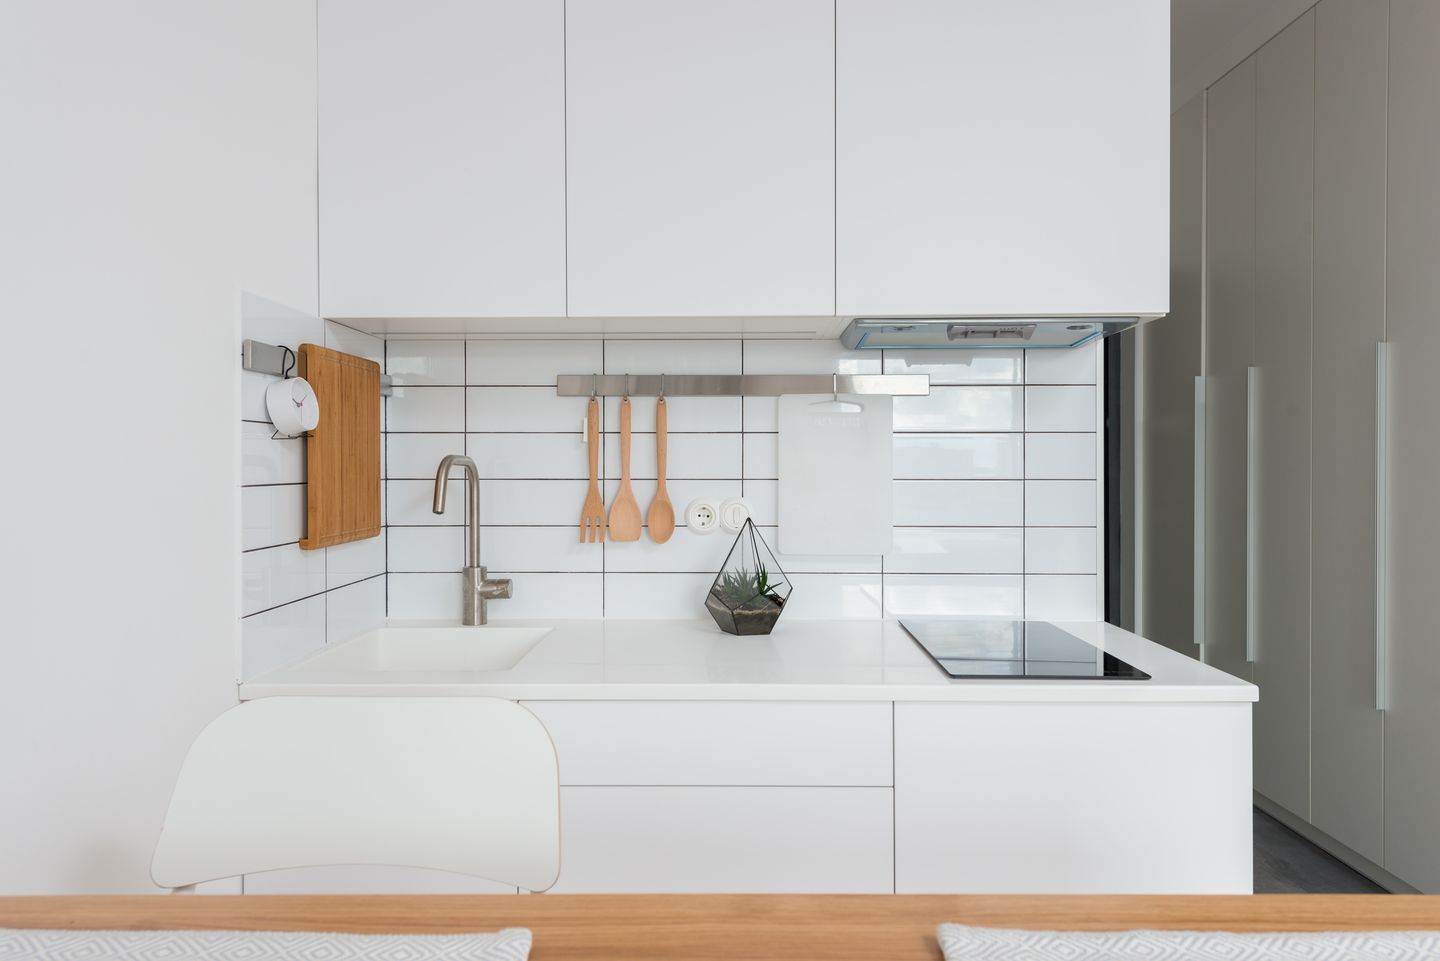 Memilih dominasi warna putih pada dapur kecil membuat tampilan dapur menjadi lebih luas.